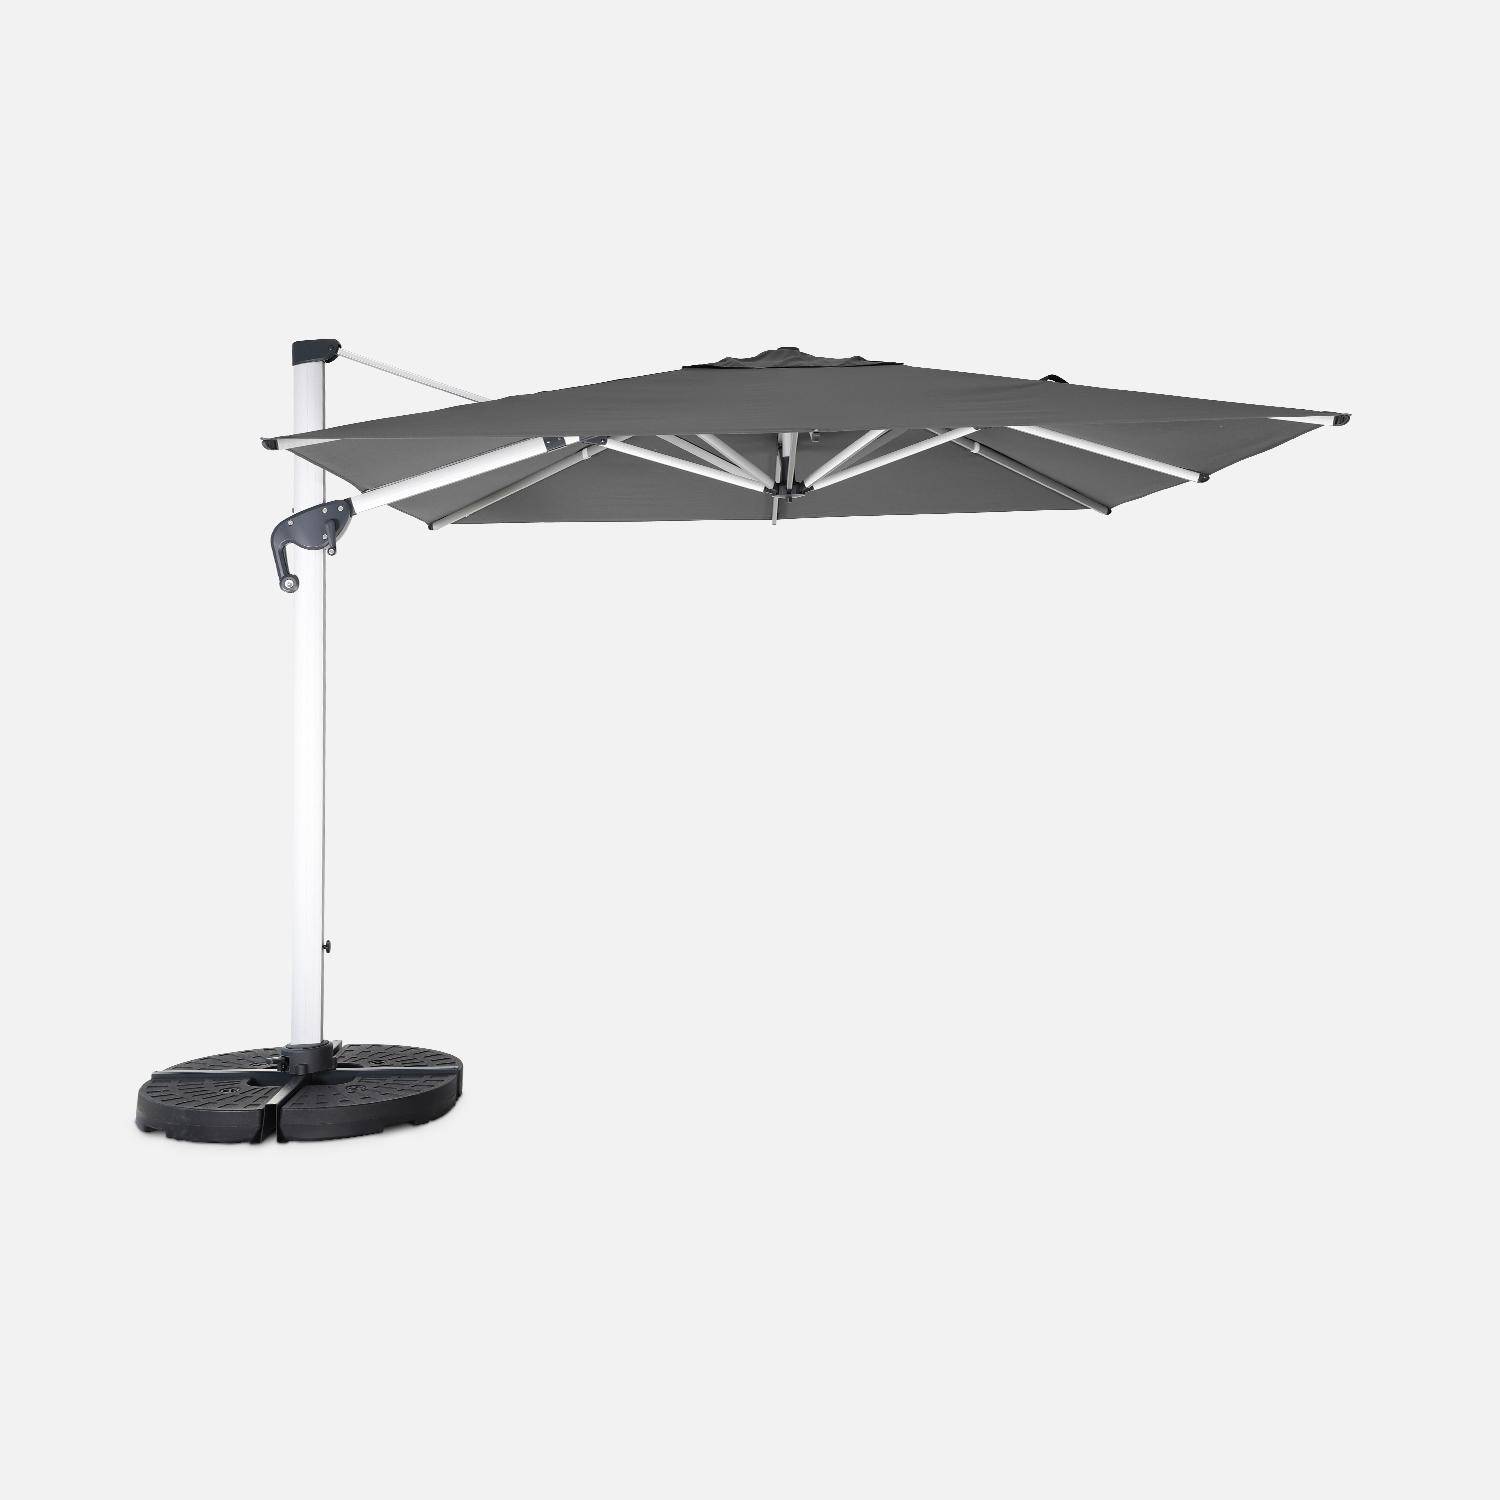 Topkwaliteit parasol, 3x3m, grijs polyester doek, geanodiseerd aluminium frame, hoes inbegrepen,sweeek,Photo2